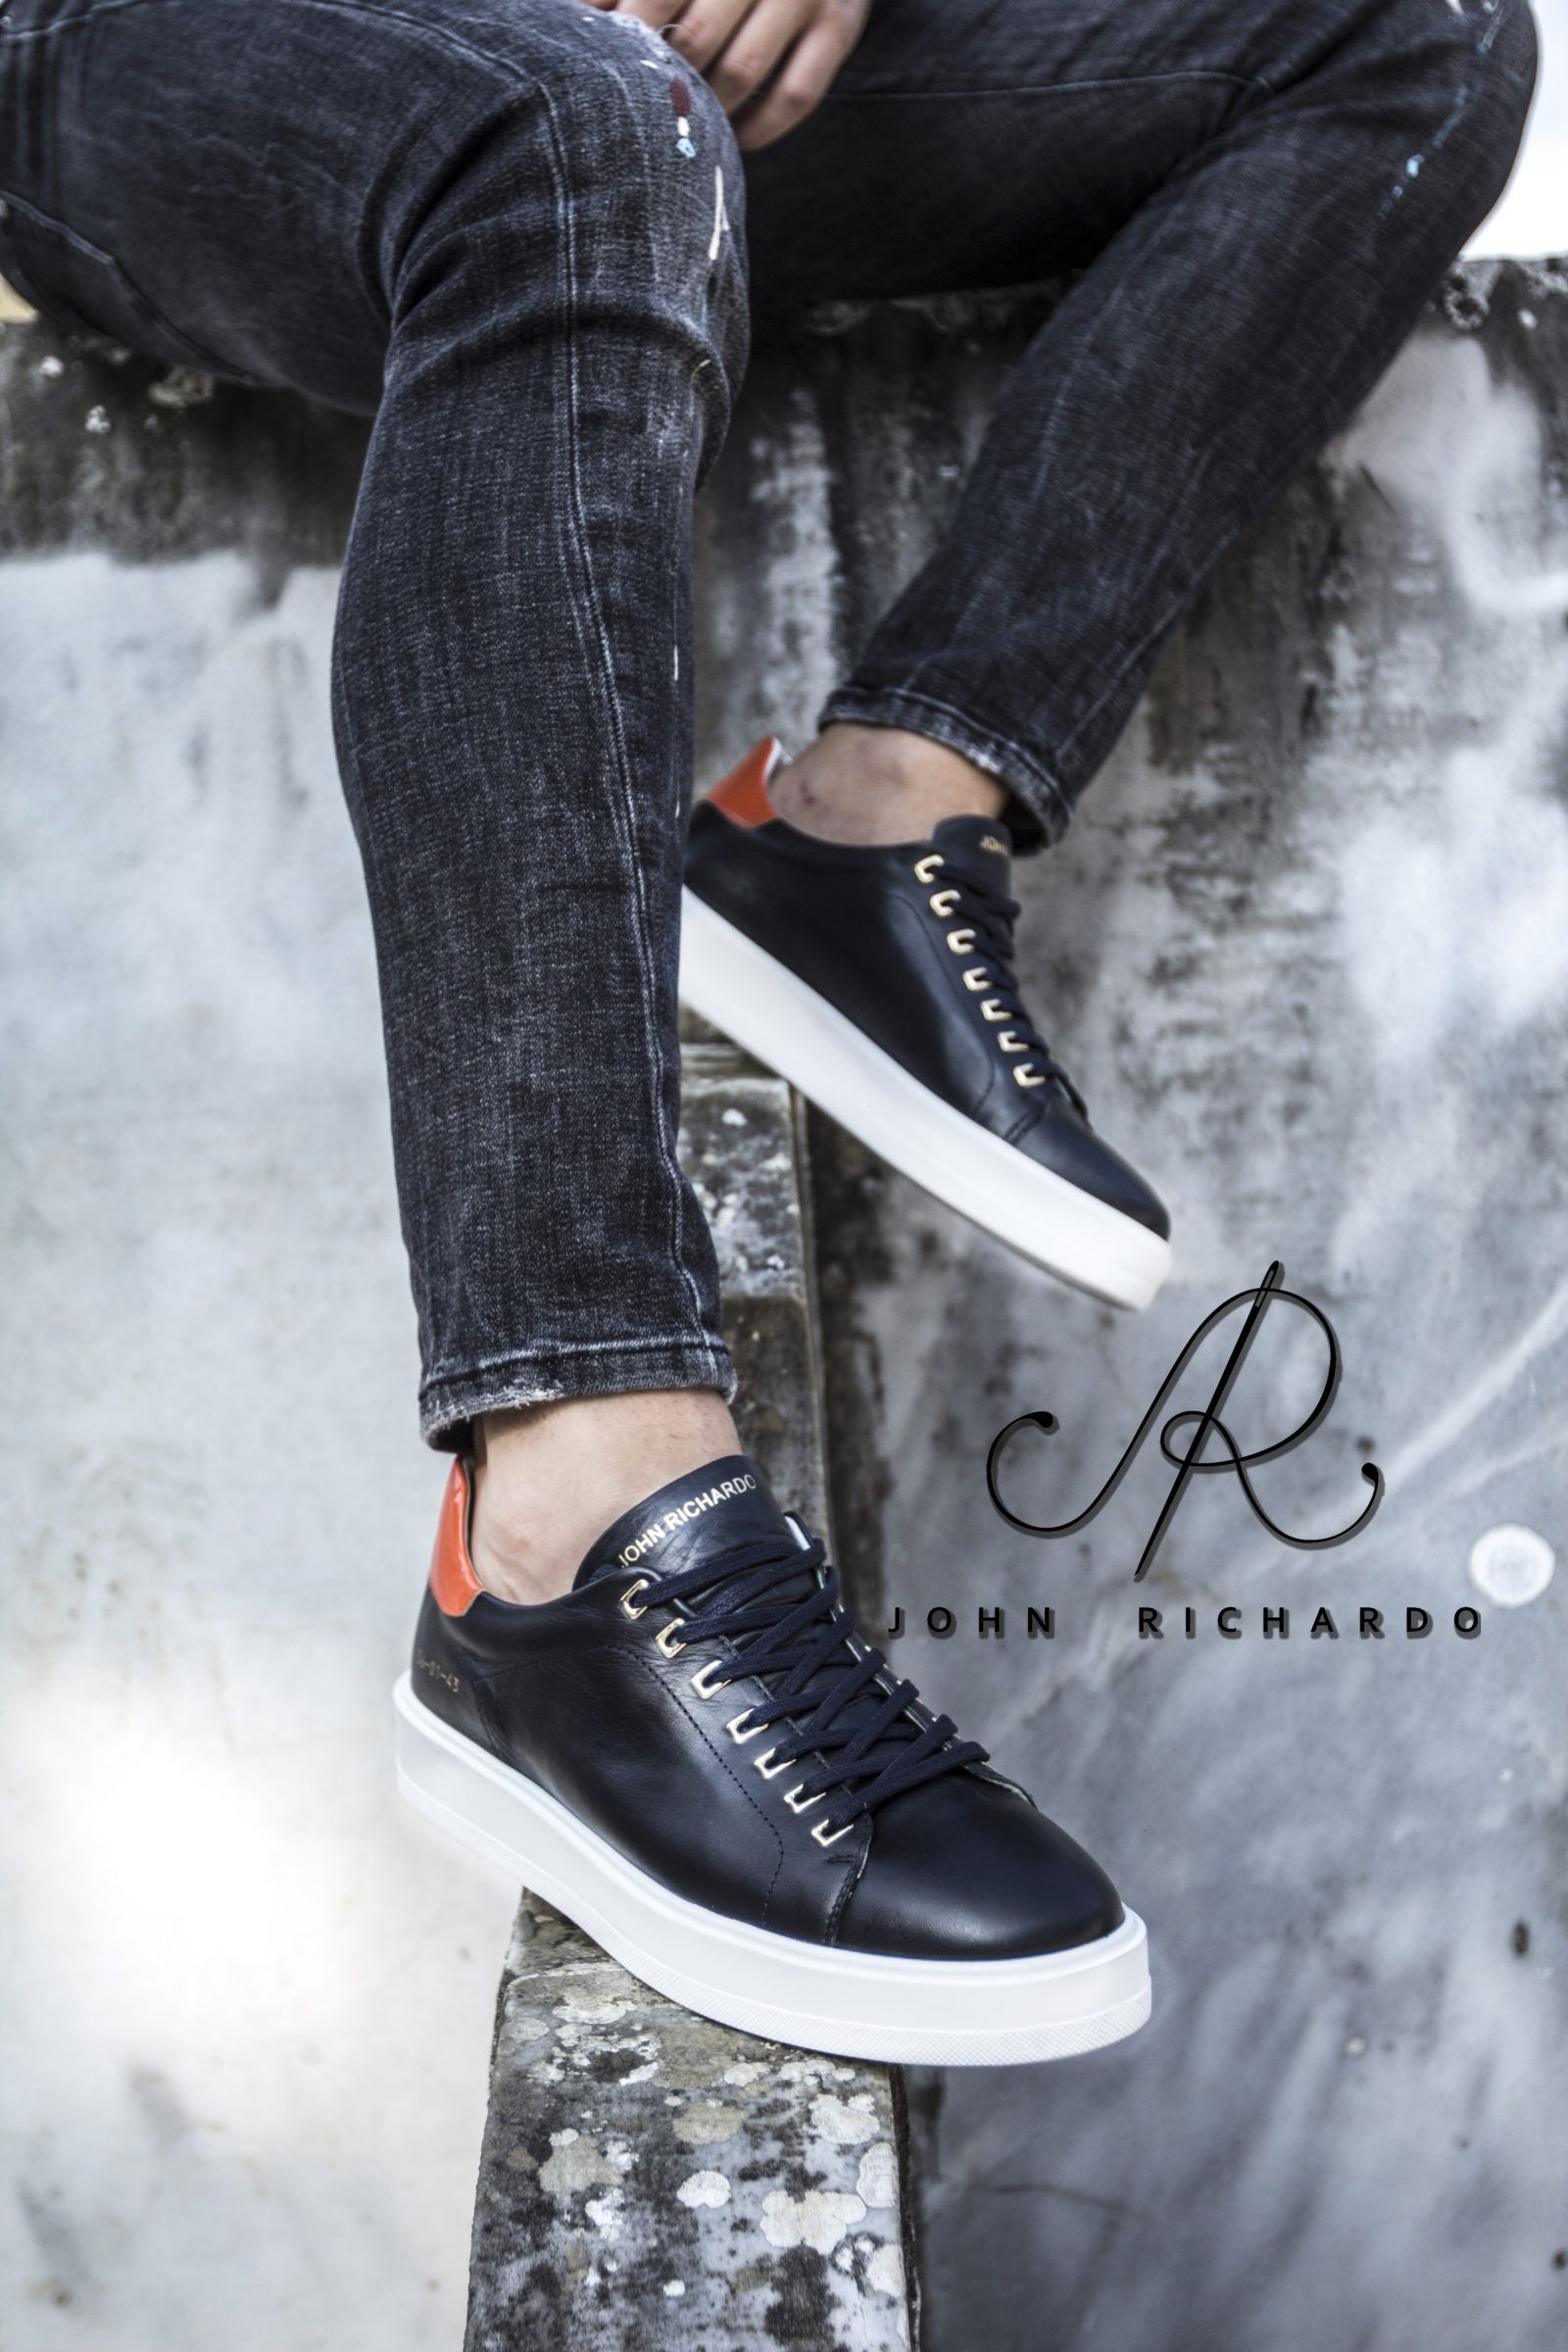 Turkish footwear manufacturer John Richardo to be featured at Euro Shoes